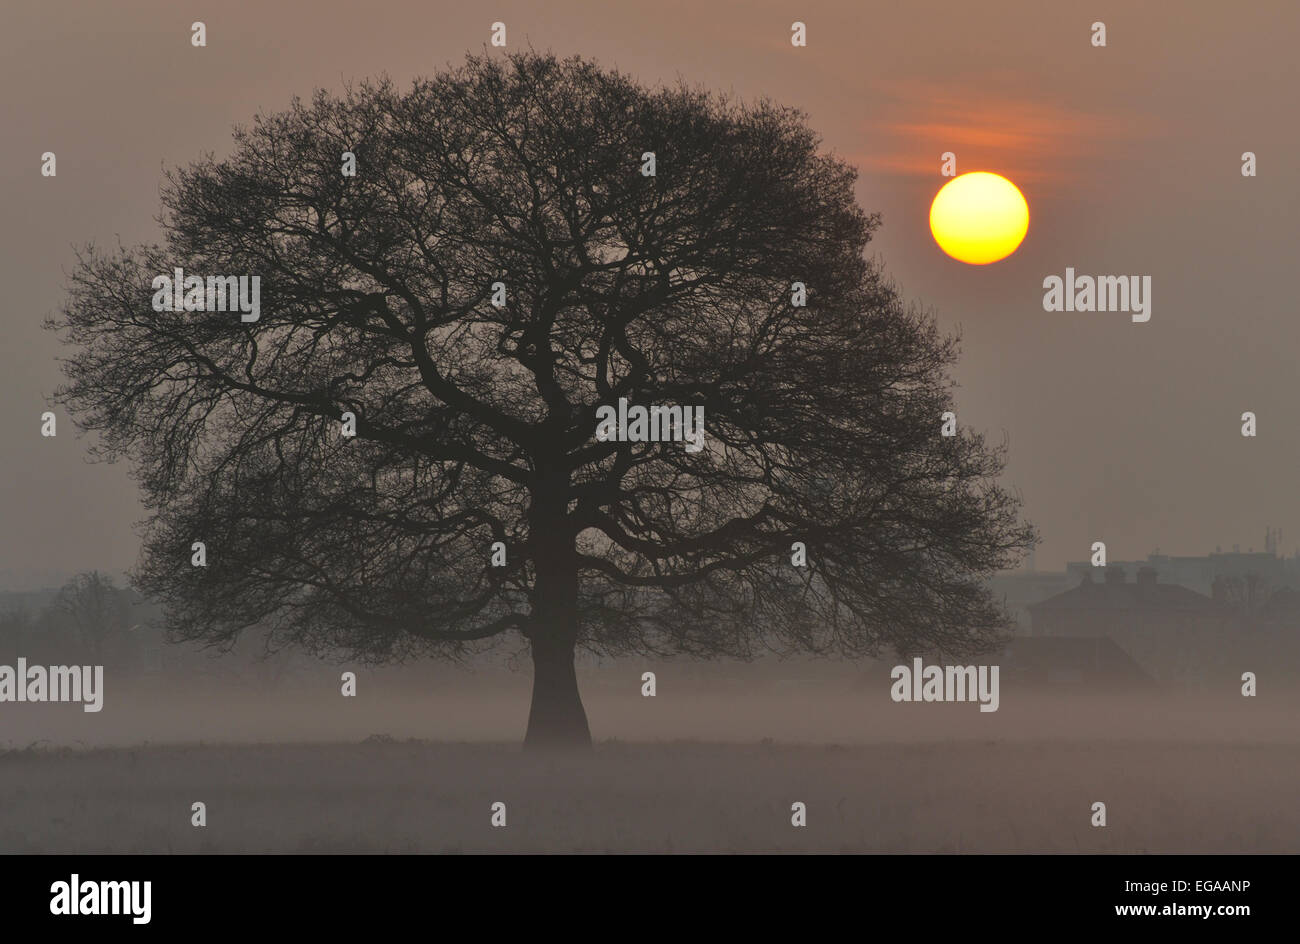 Misty sunrise in Bushy Park, London, UK Stock Photo